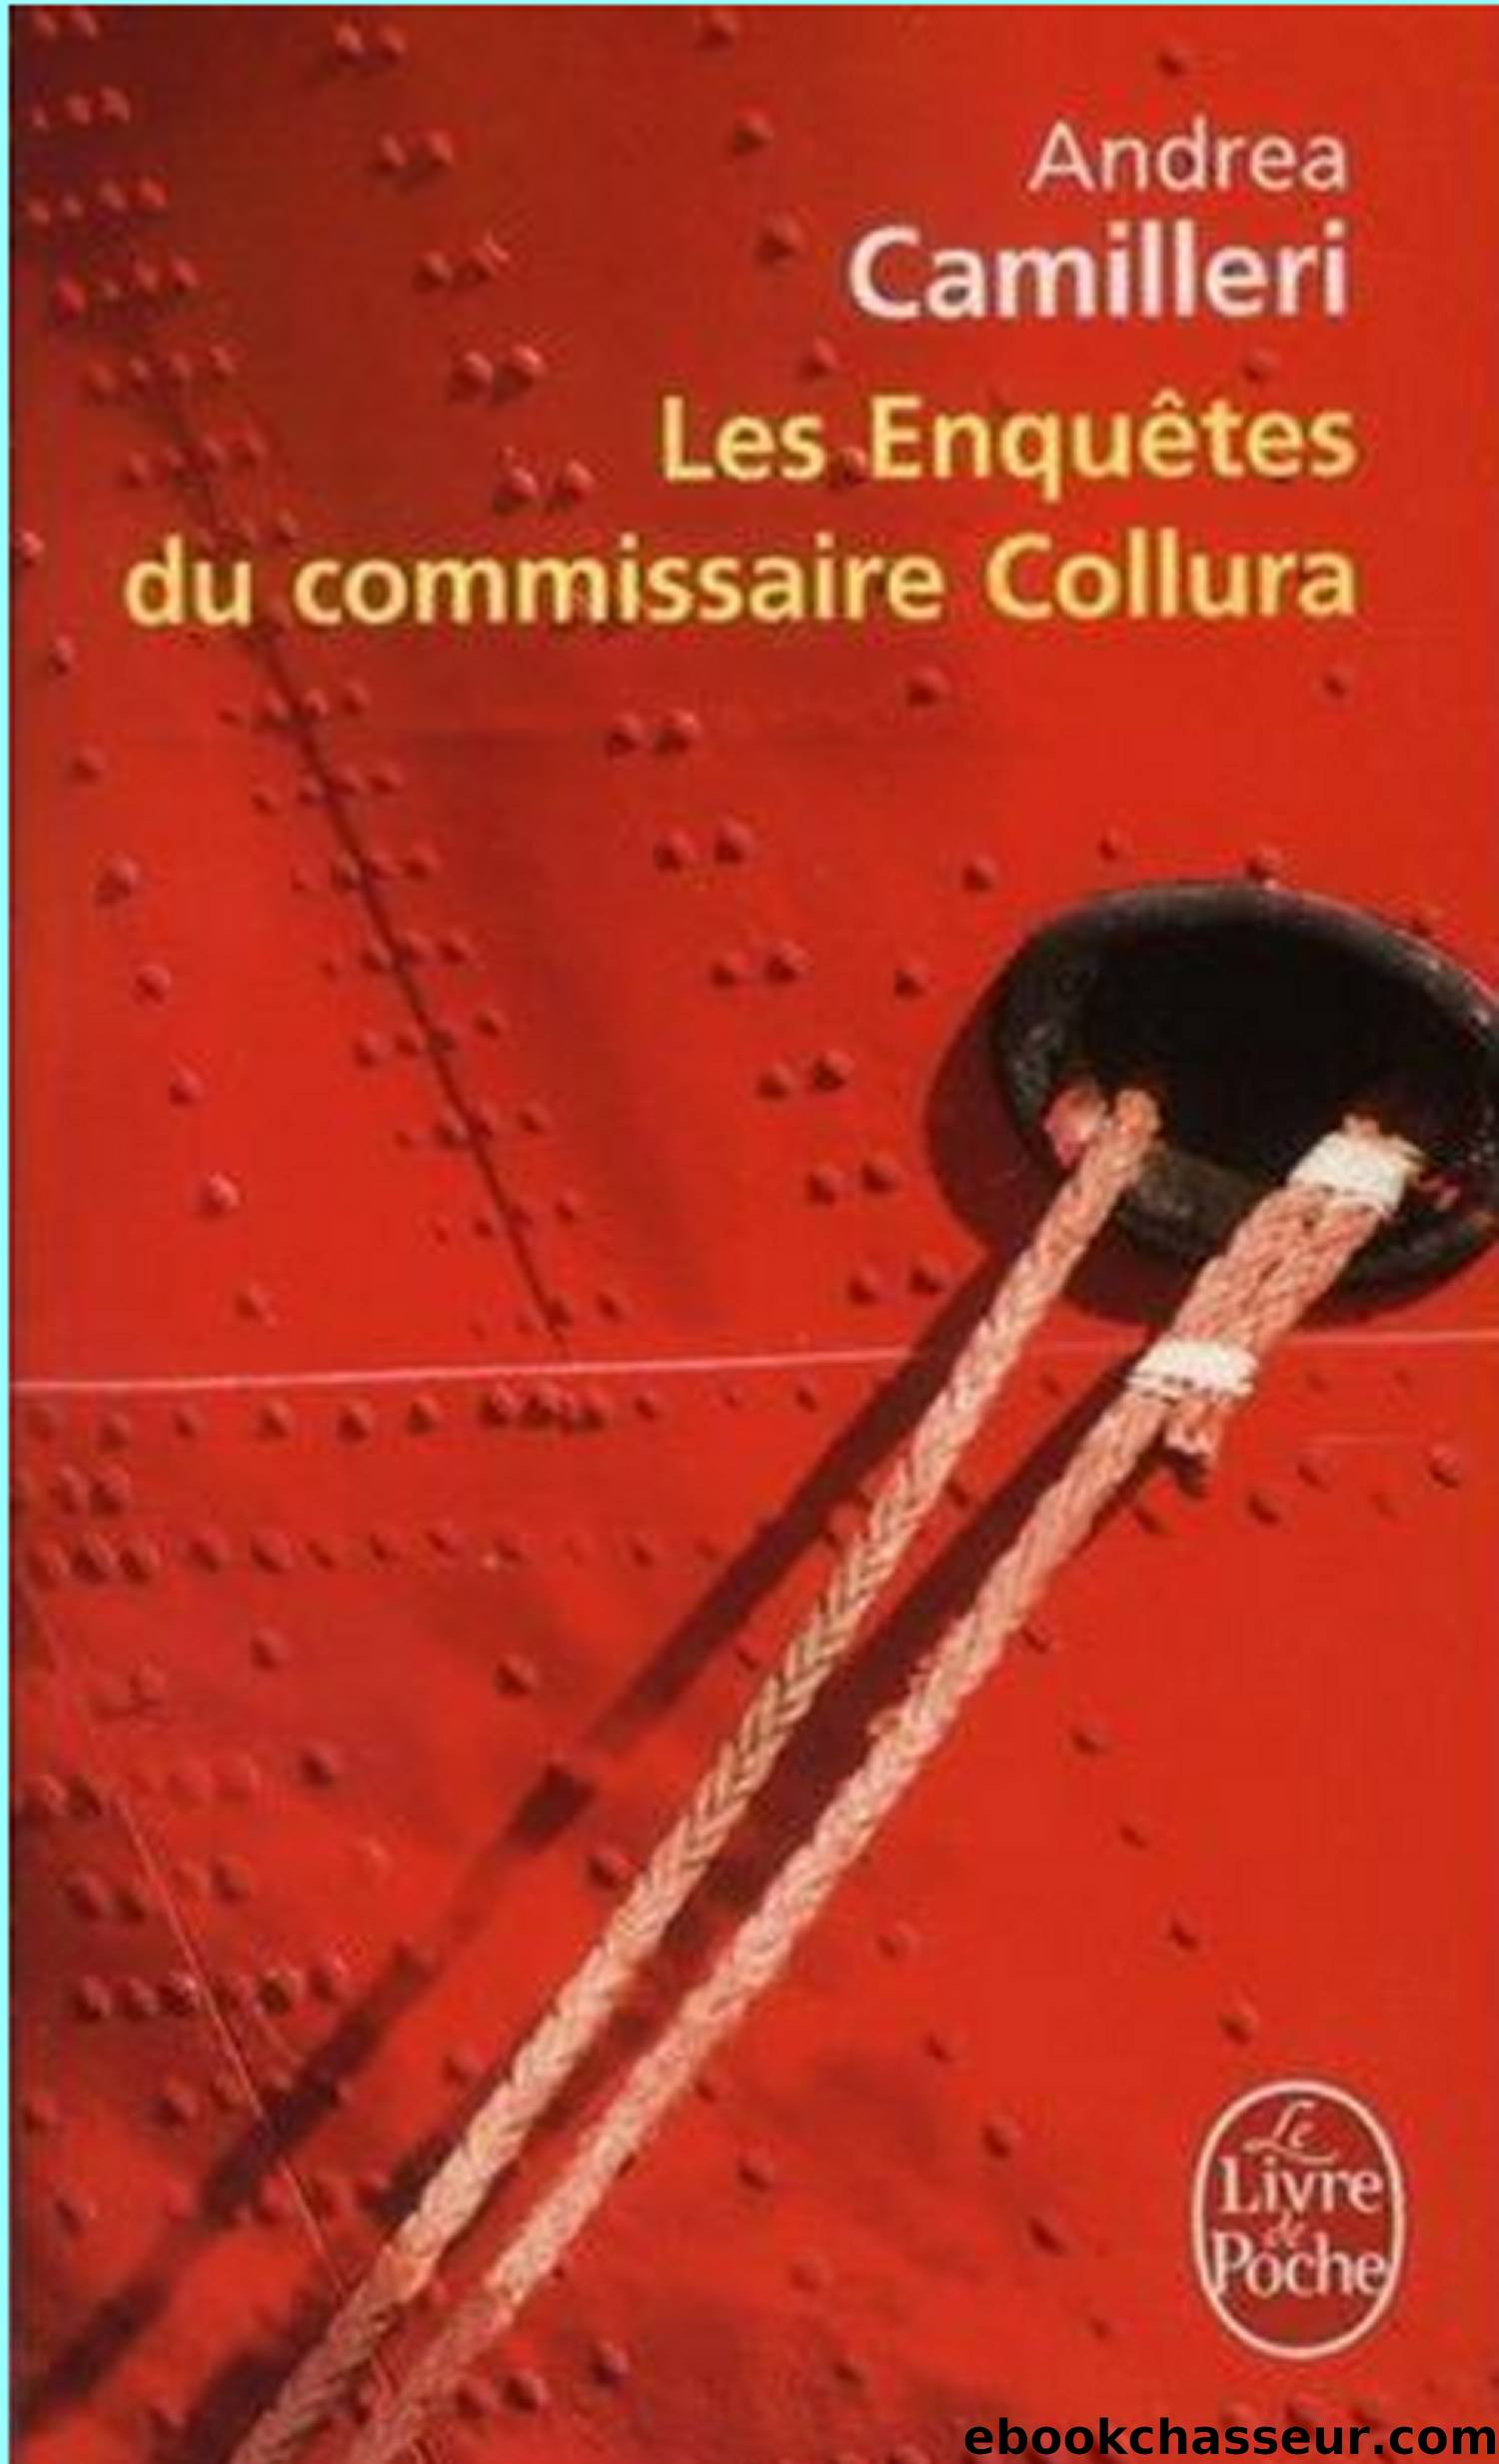 Les enquÃªtes du commissaire Collura by Andrea Camilleri